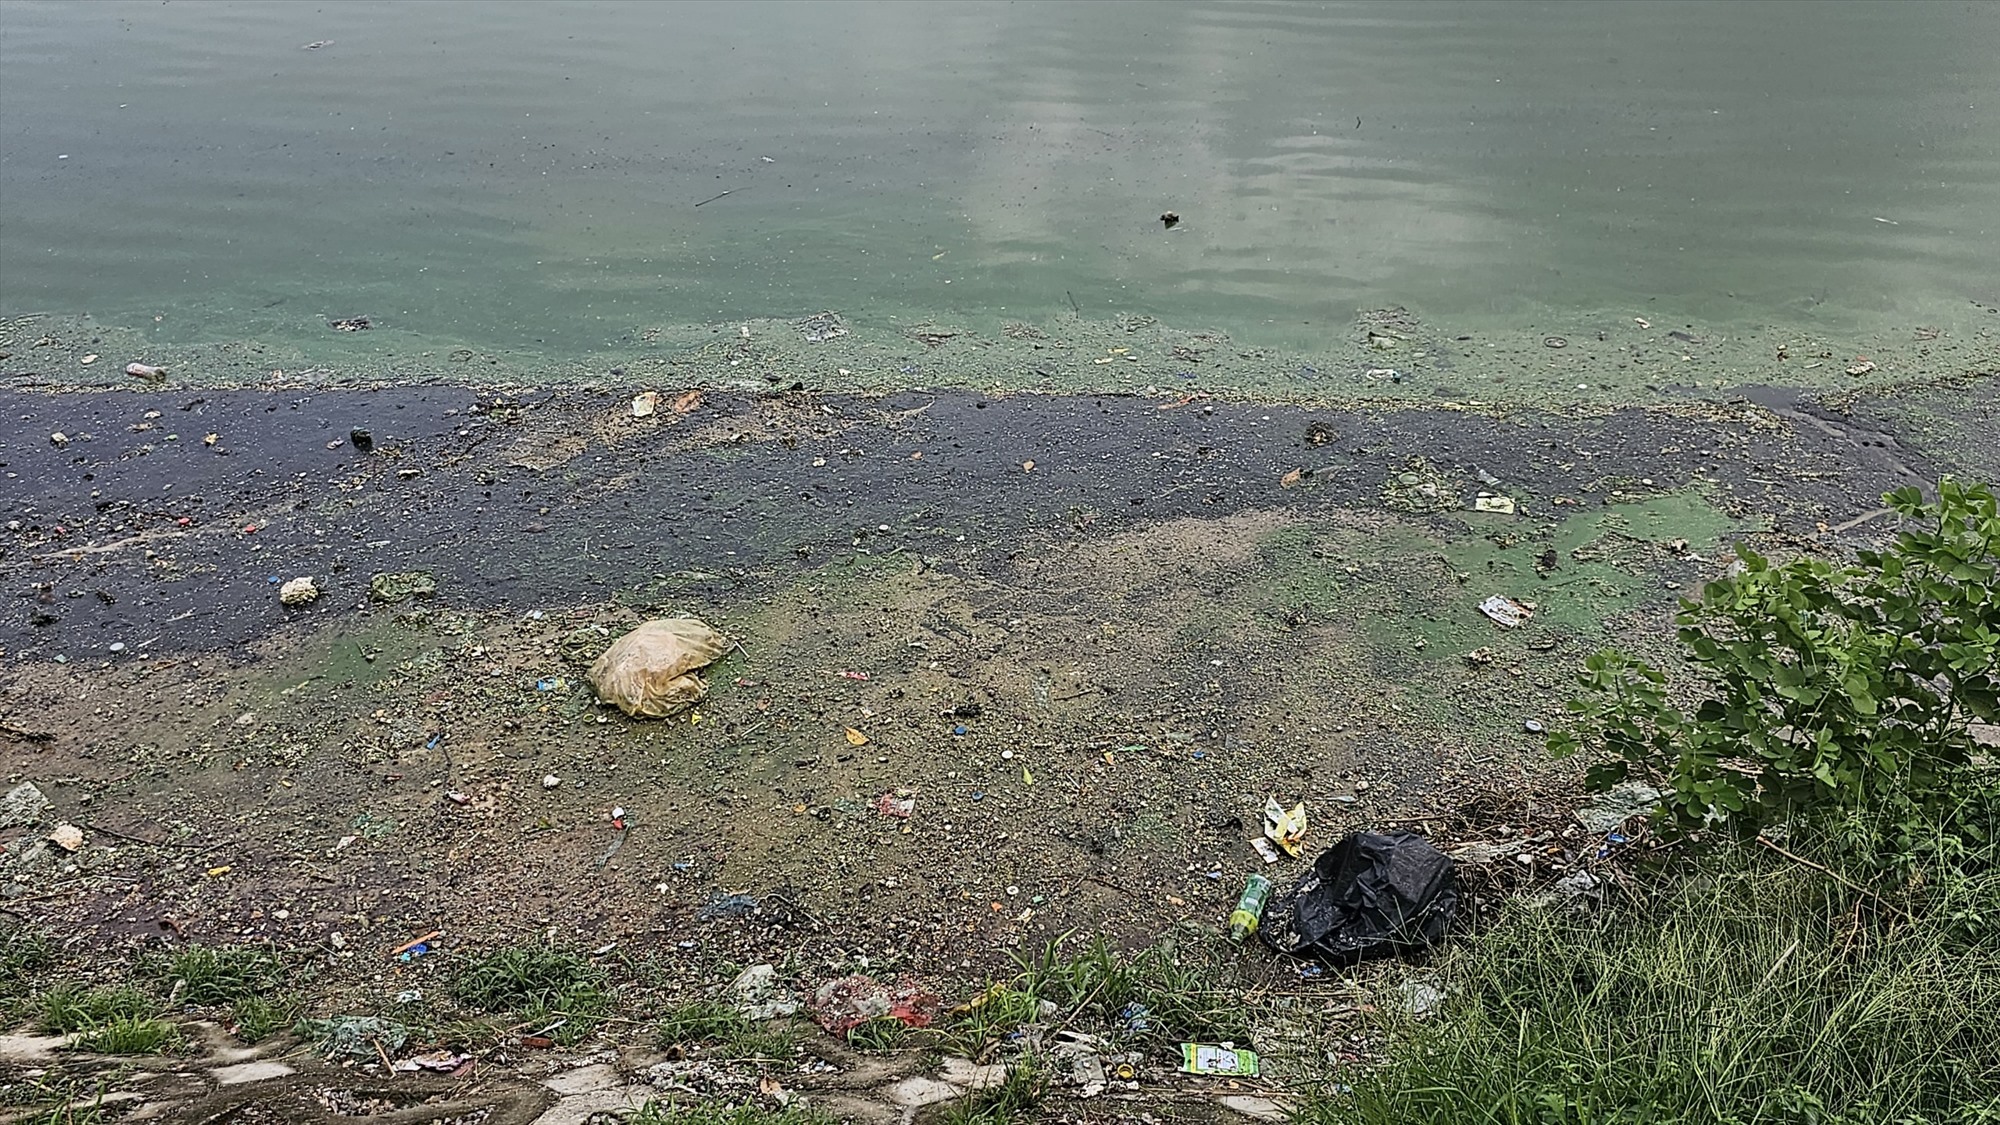 Ghi nhận của Lao Động trong ngày 28.6, rác thải vứt bừa bãi ở nhiều khu vực của hồ Linh Quang, nước hồ bốc mùi hôi thối.